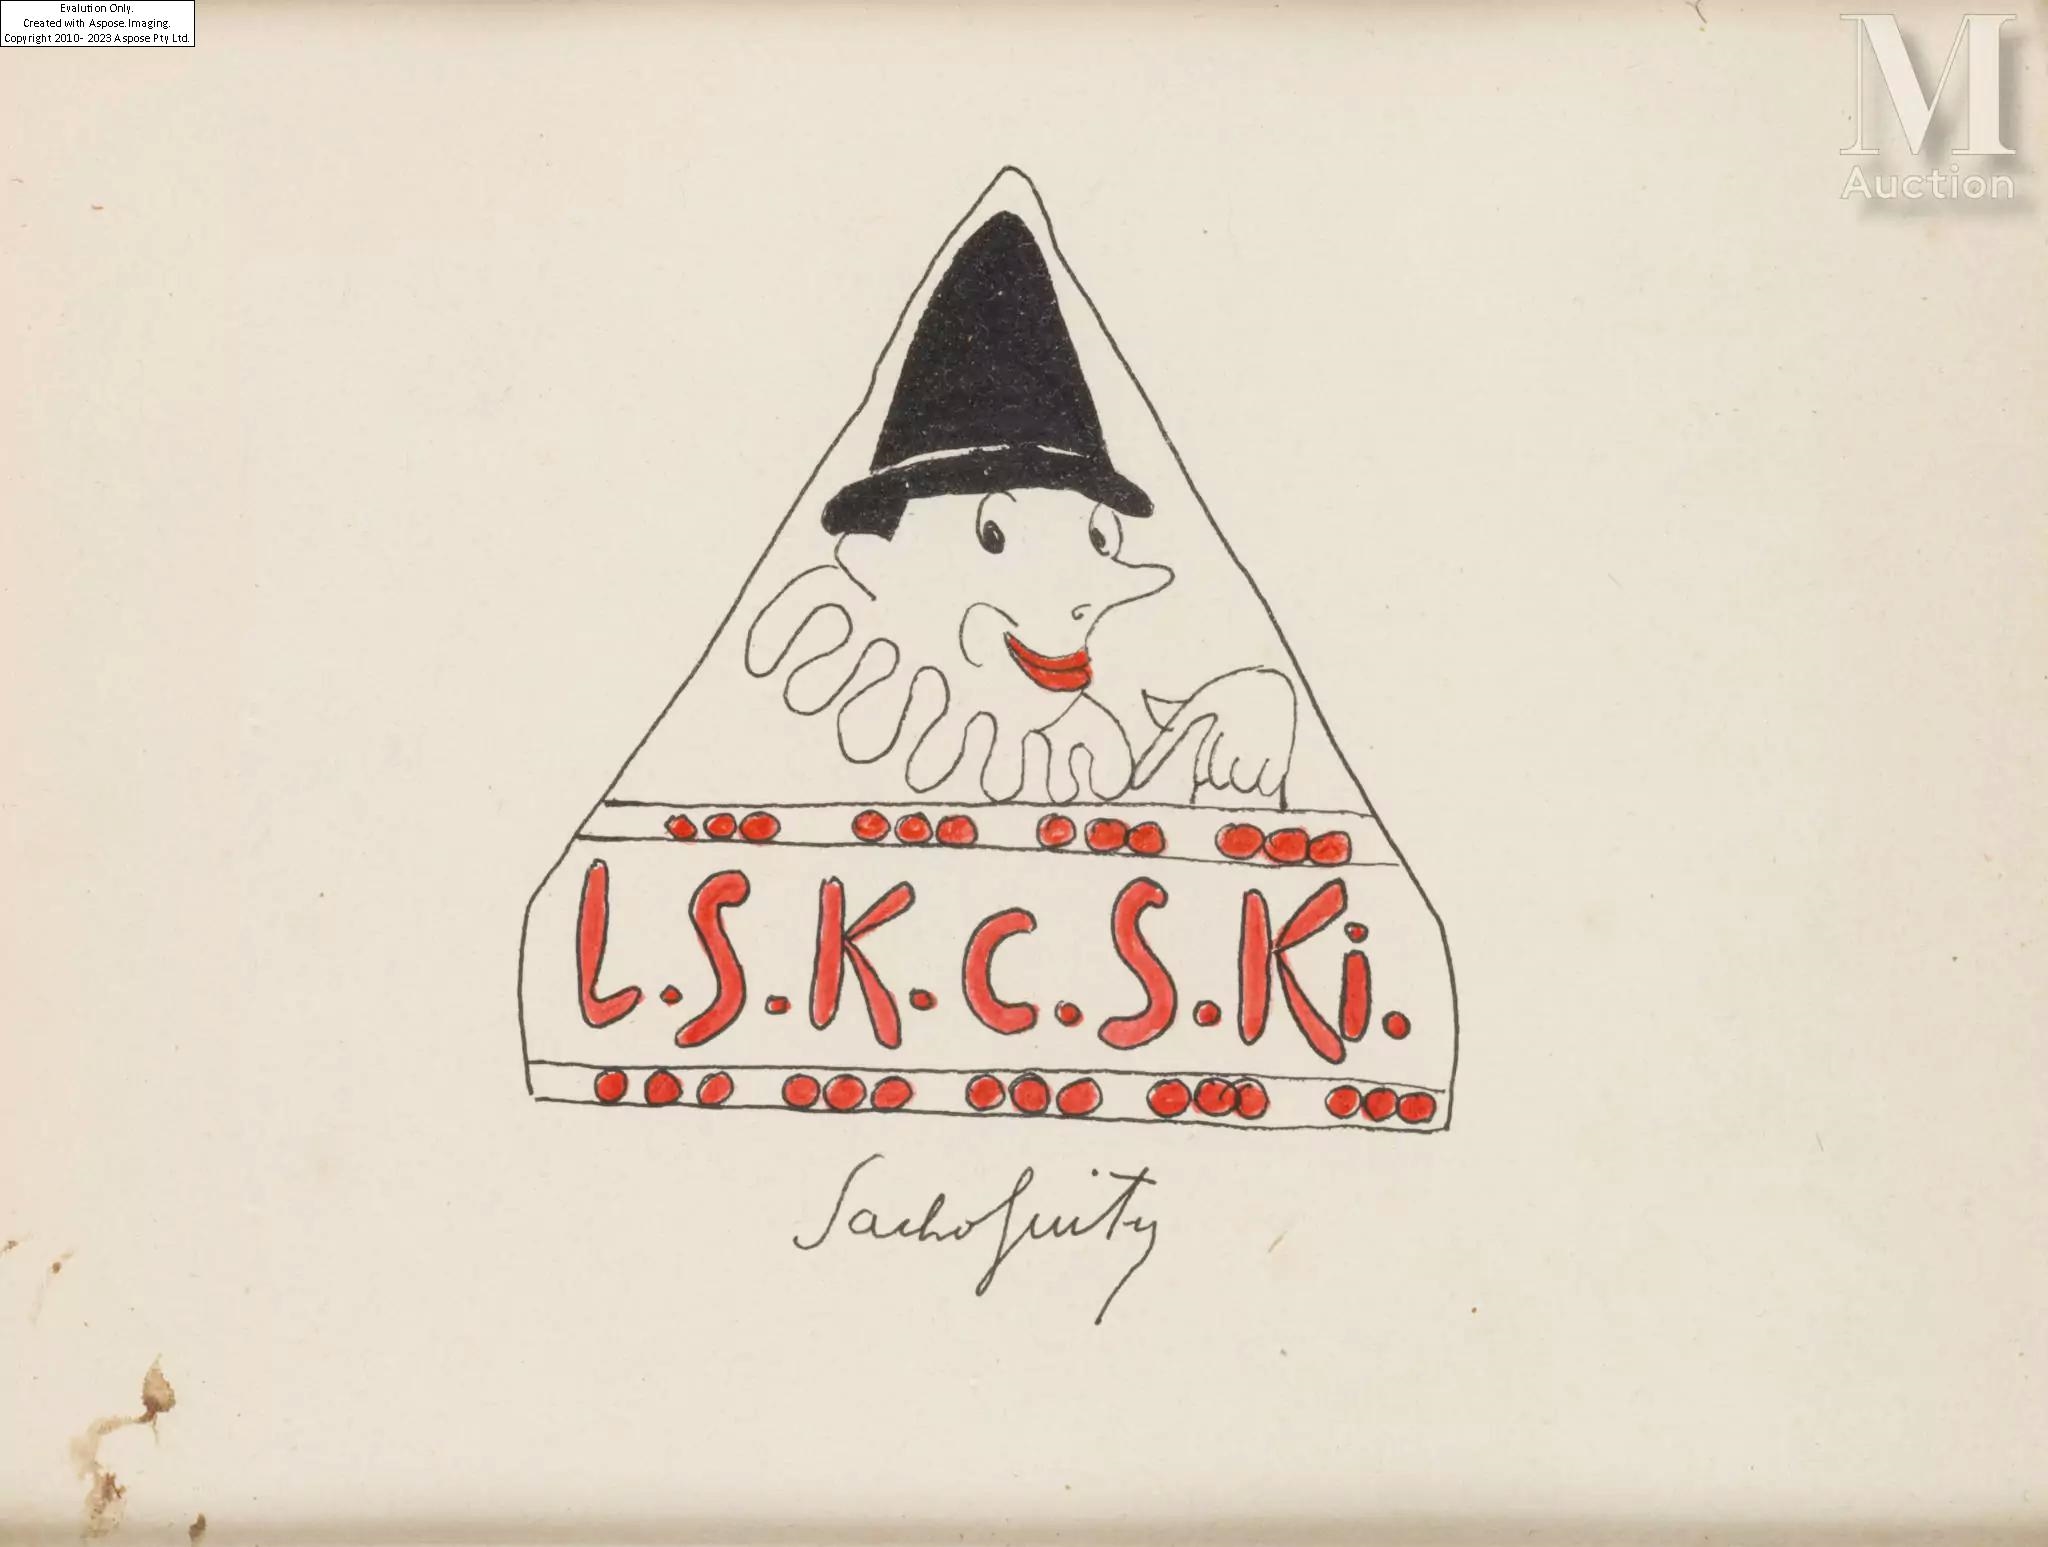 Projet de publicité L.S.K.C.S.Ki. pour le chocolat ELESKA - Sacha Guitry